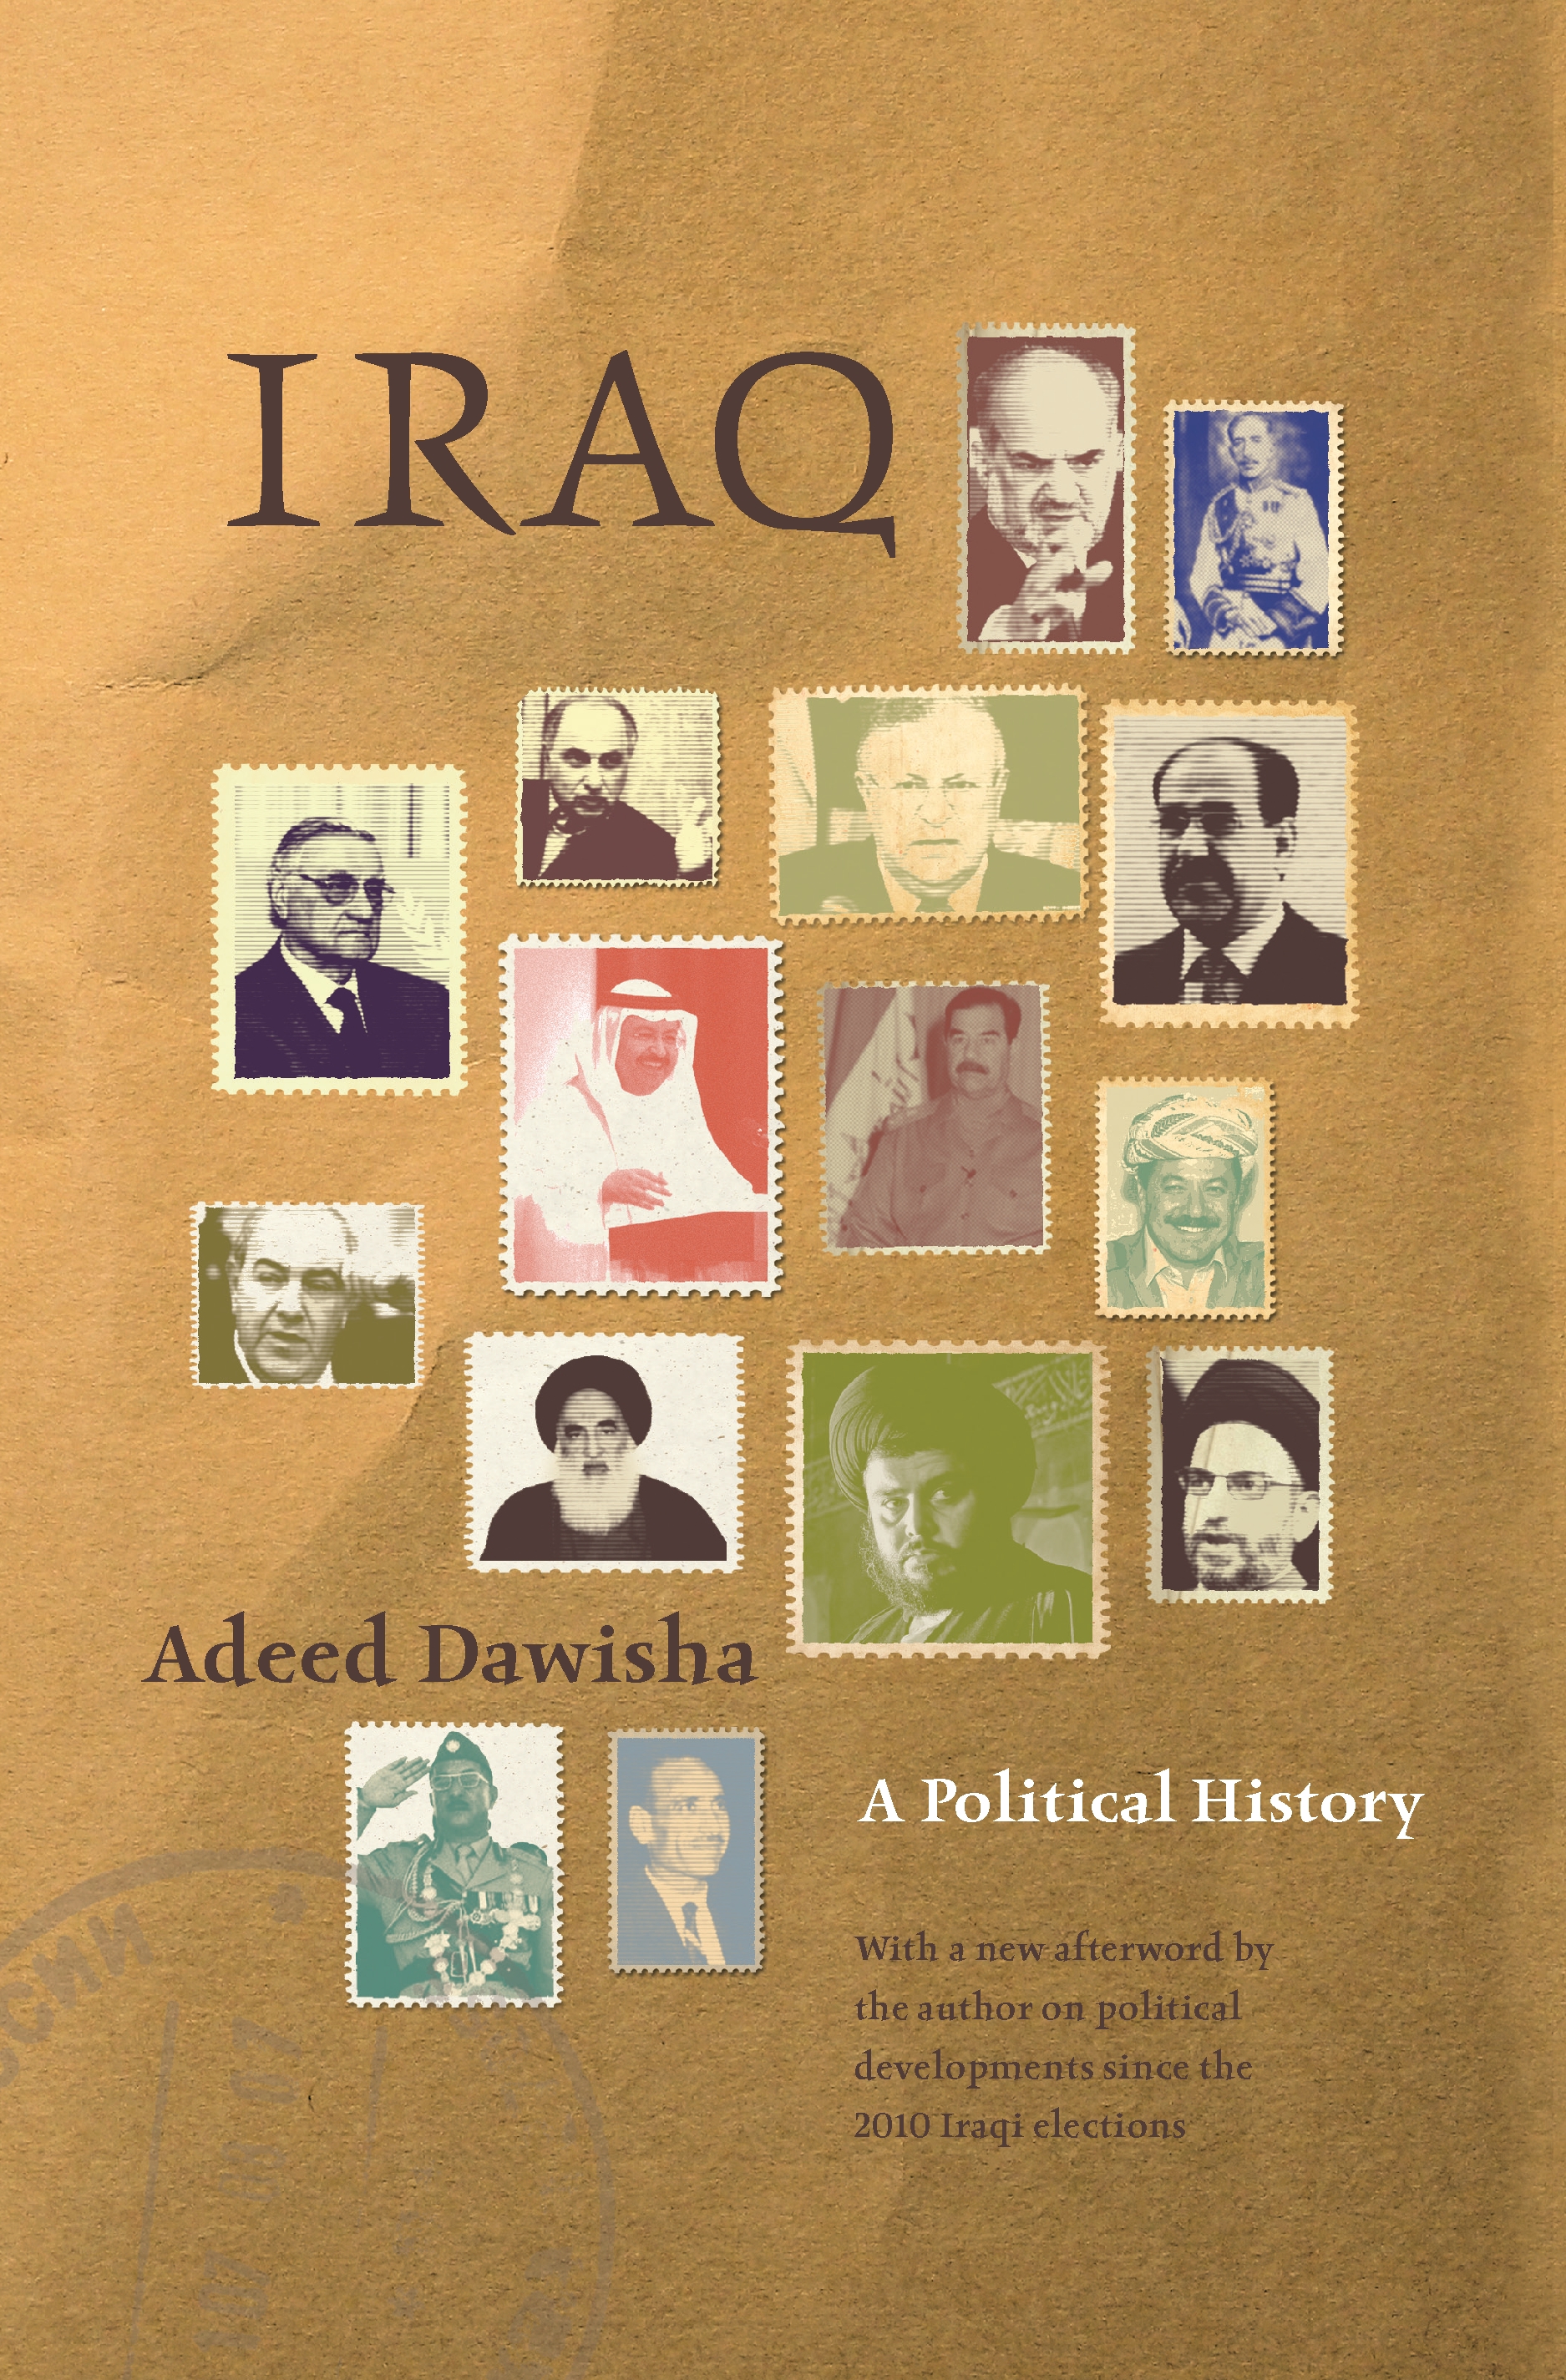 Iraq Princeton University Press